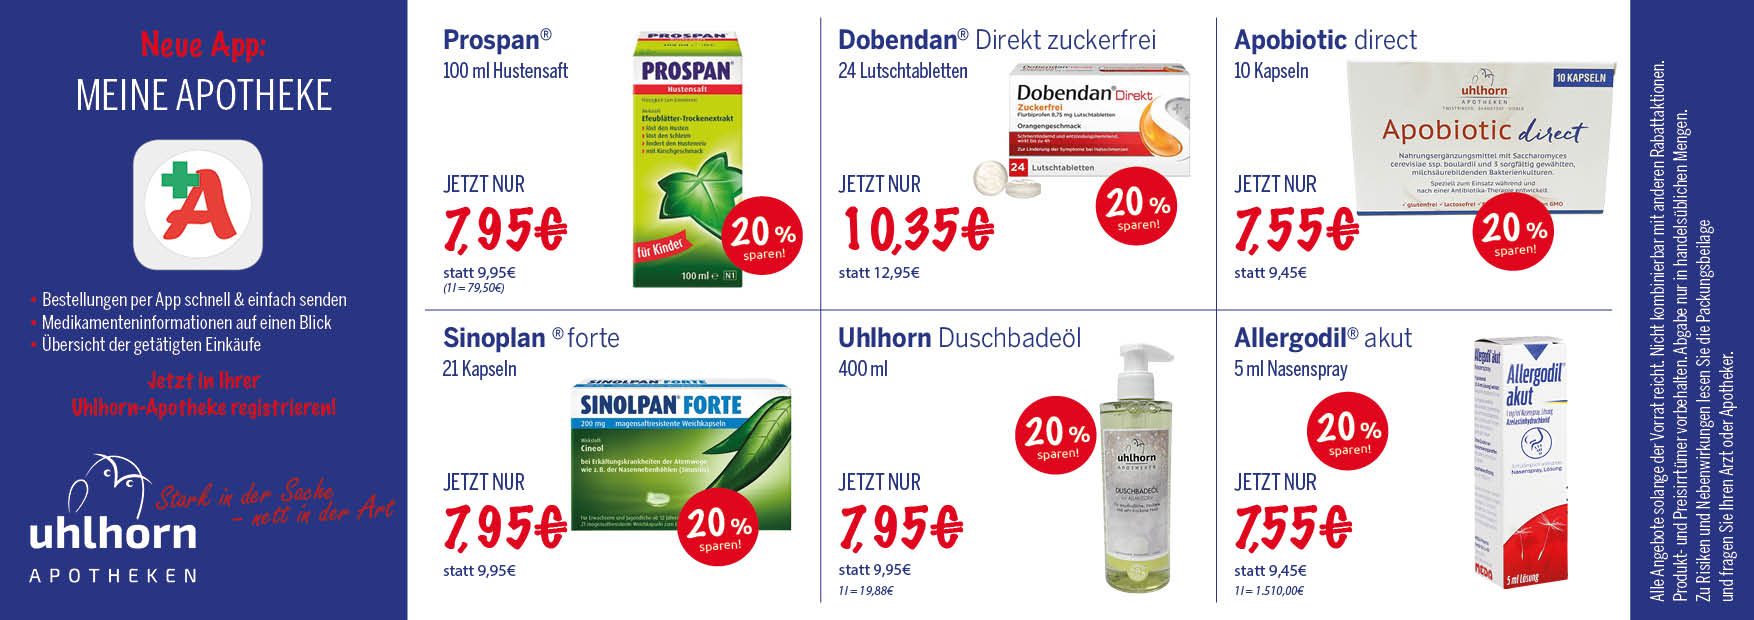 Angebote Uhlhorn-Apotheken - Twistringen, Barnstorf und Visbek